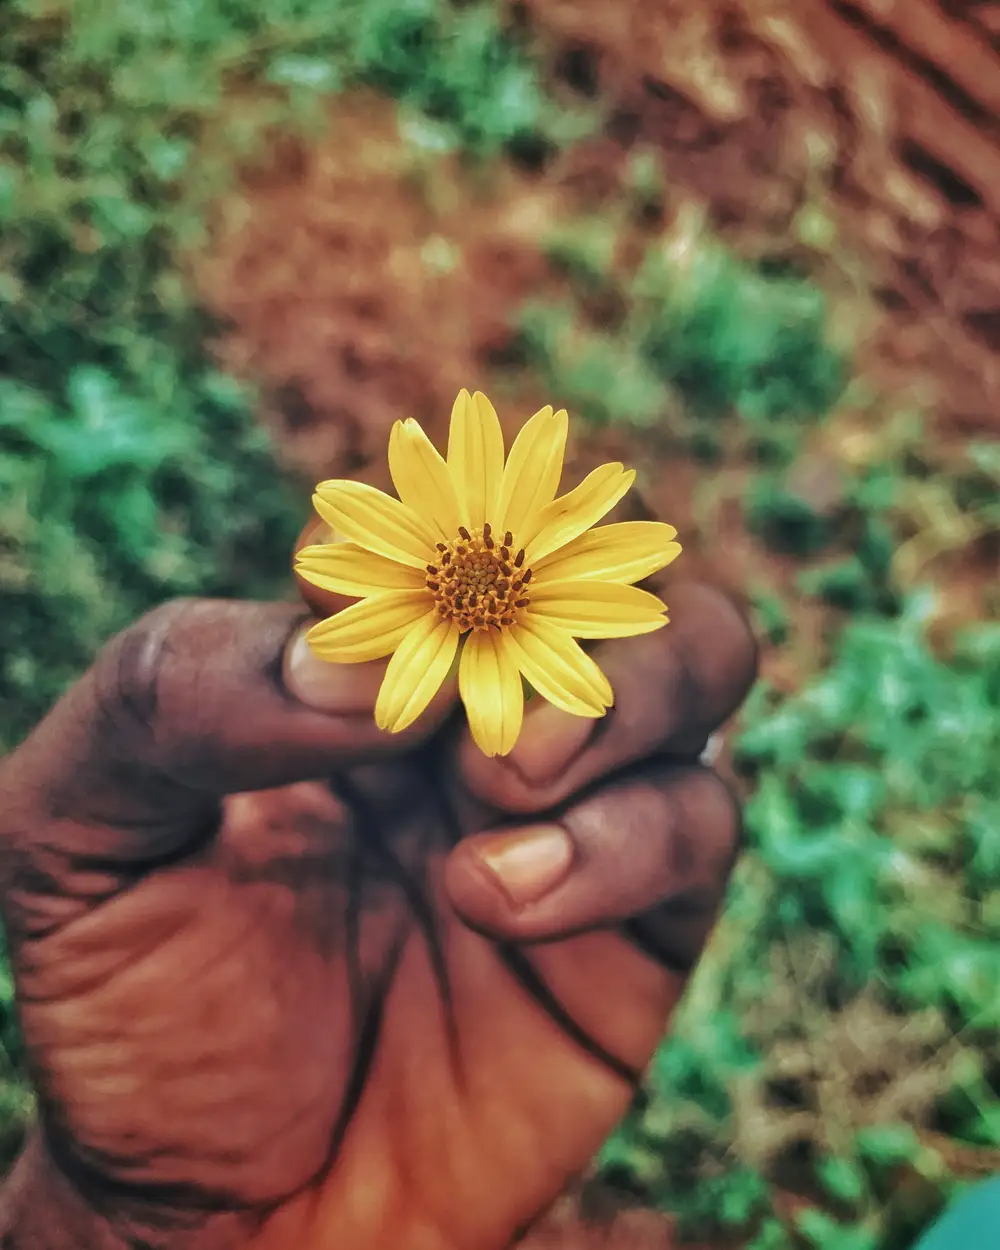 a flower